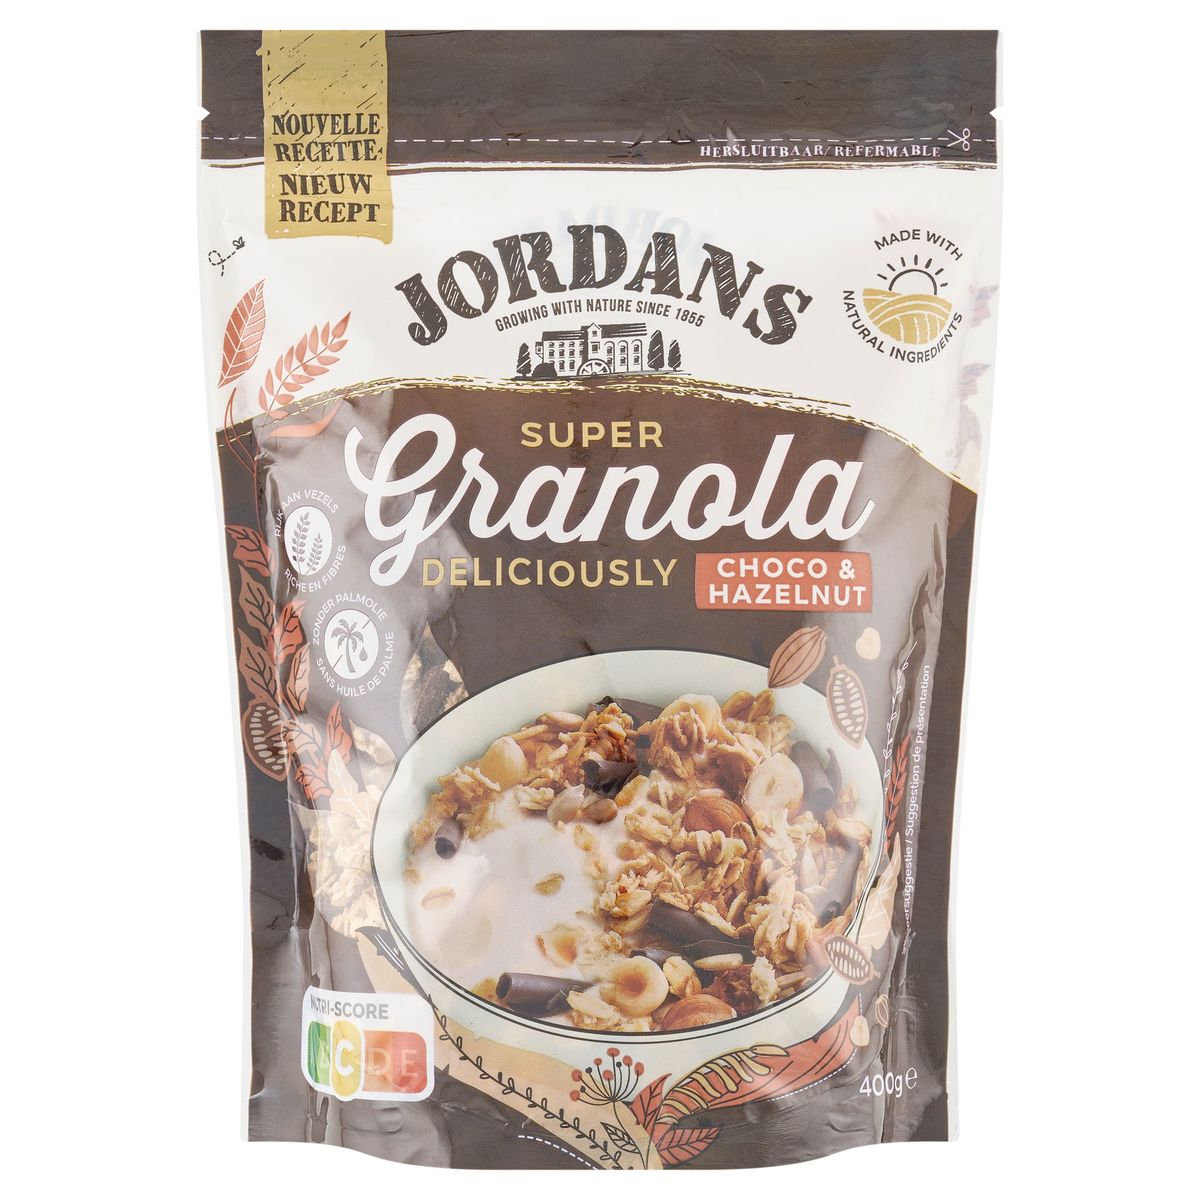 Jordans - Granola faible en sucres, Septembre 2019